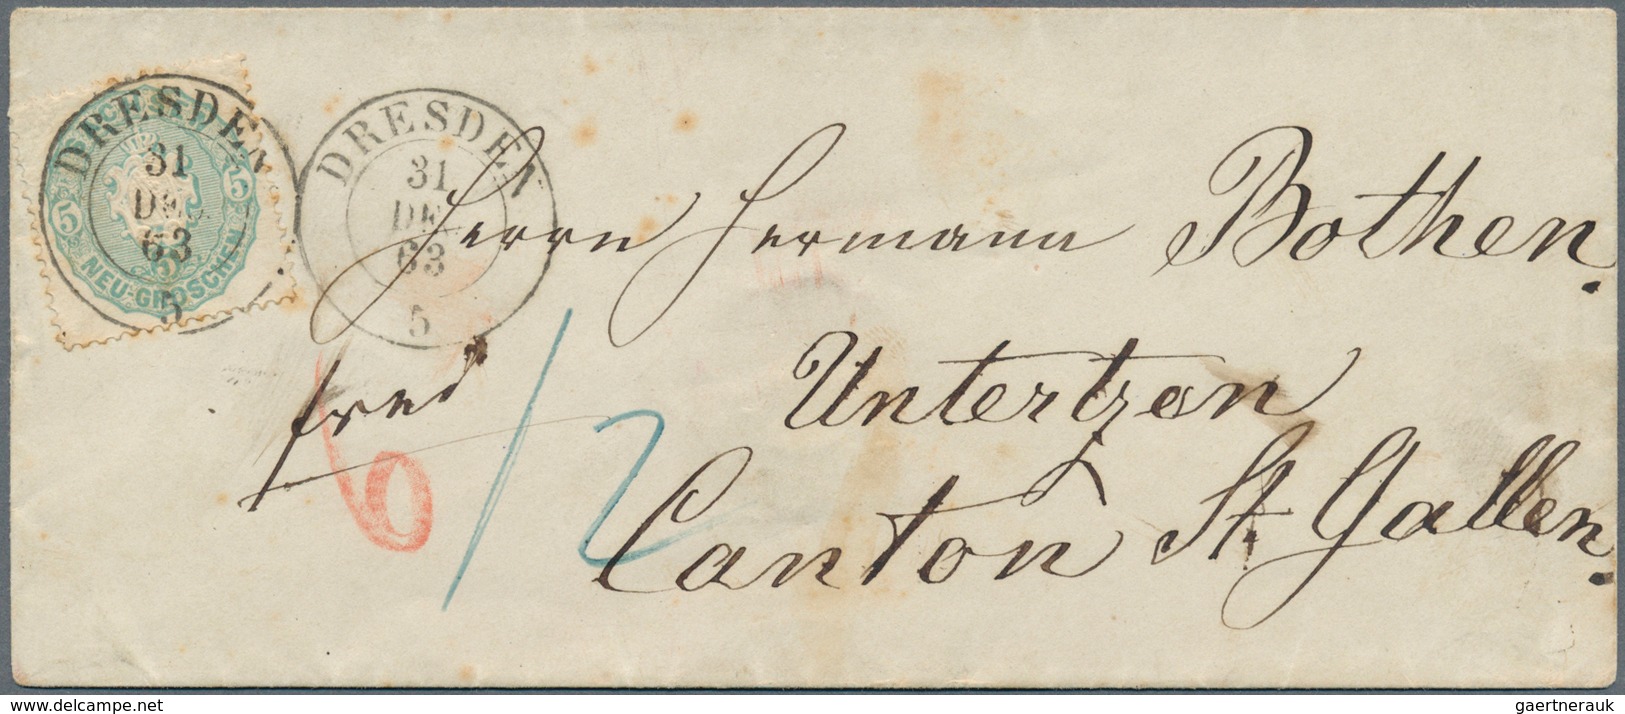 Sachsen - Marken Und Briefe: 1863 Wappen 5 Ngr. Grauultramarin Auf Couvert Mit K2 DRESDEN 31 DEC 63 - Saxony